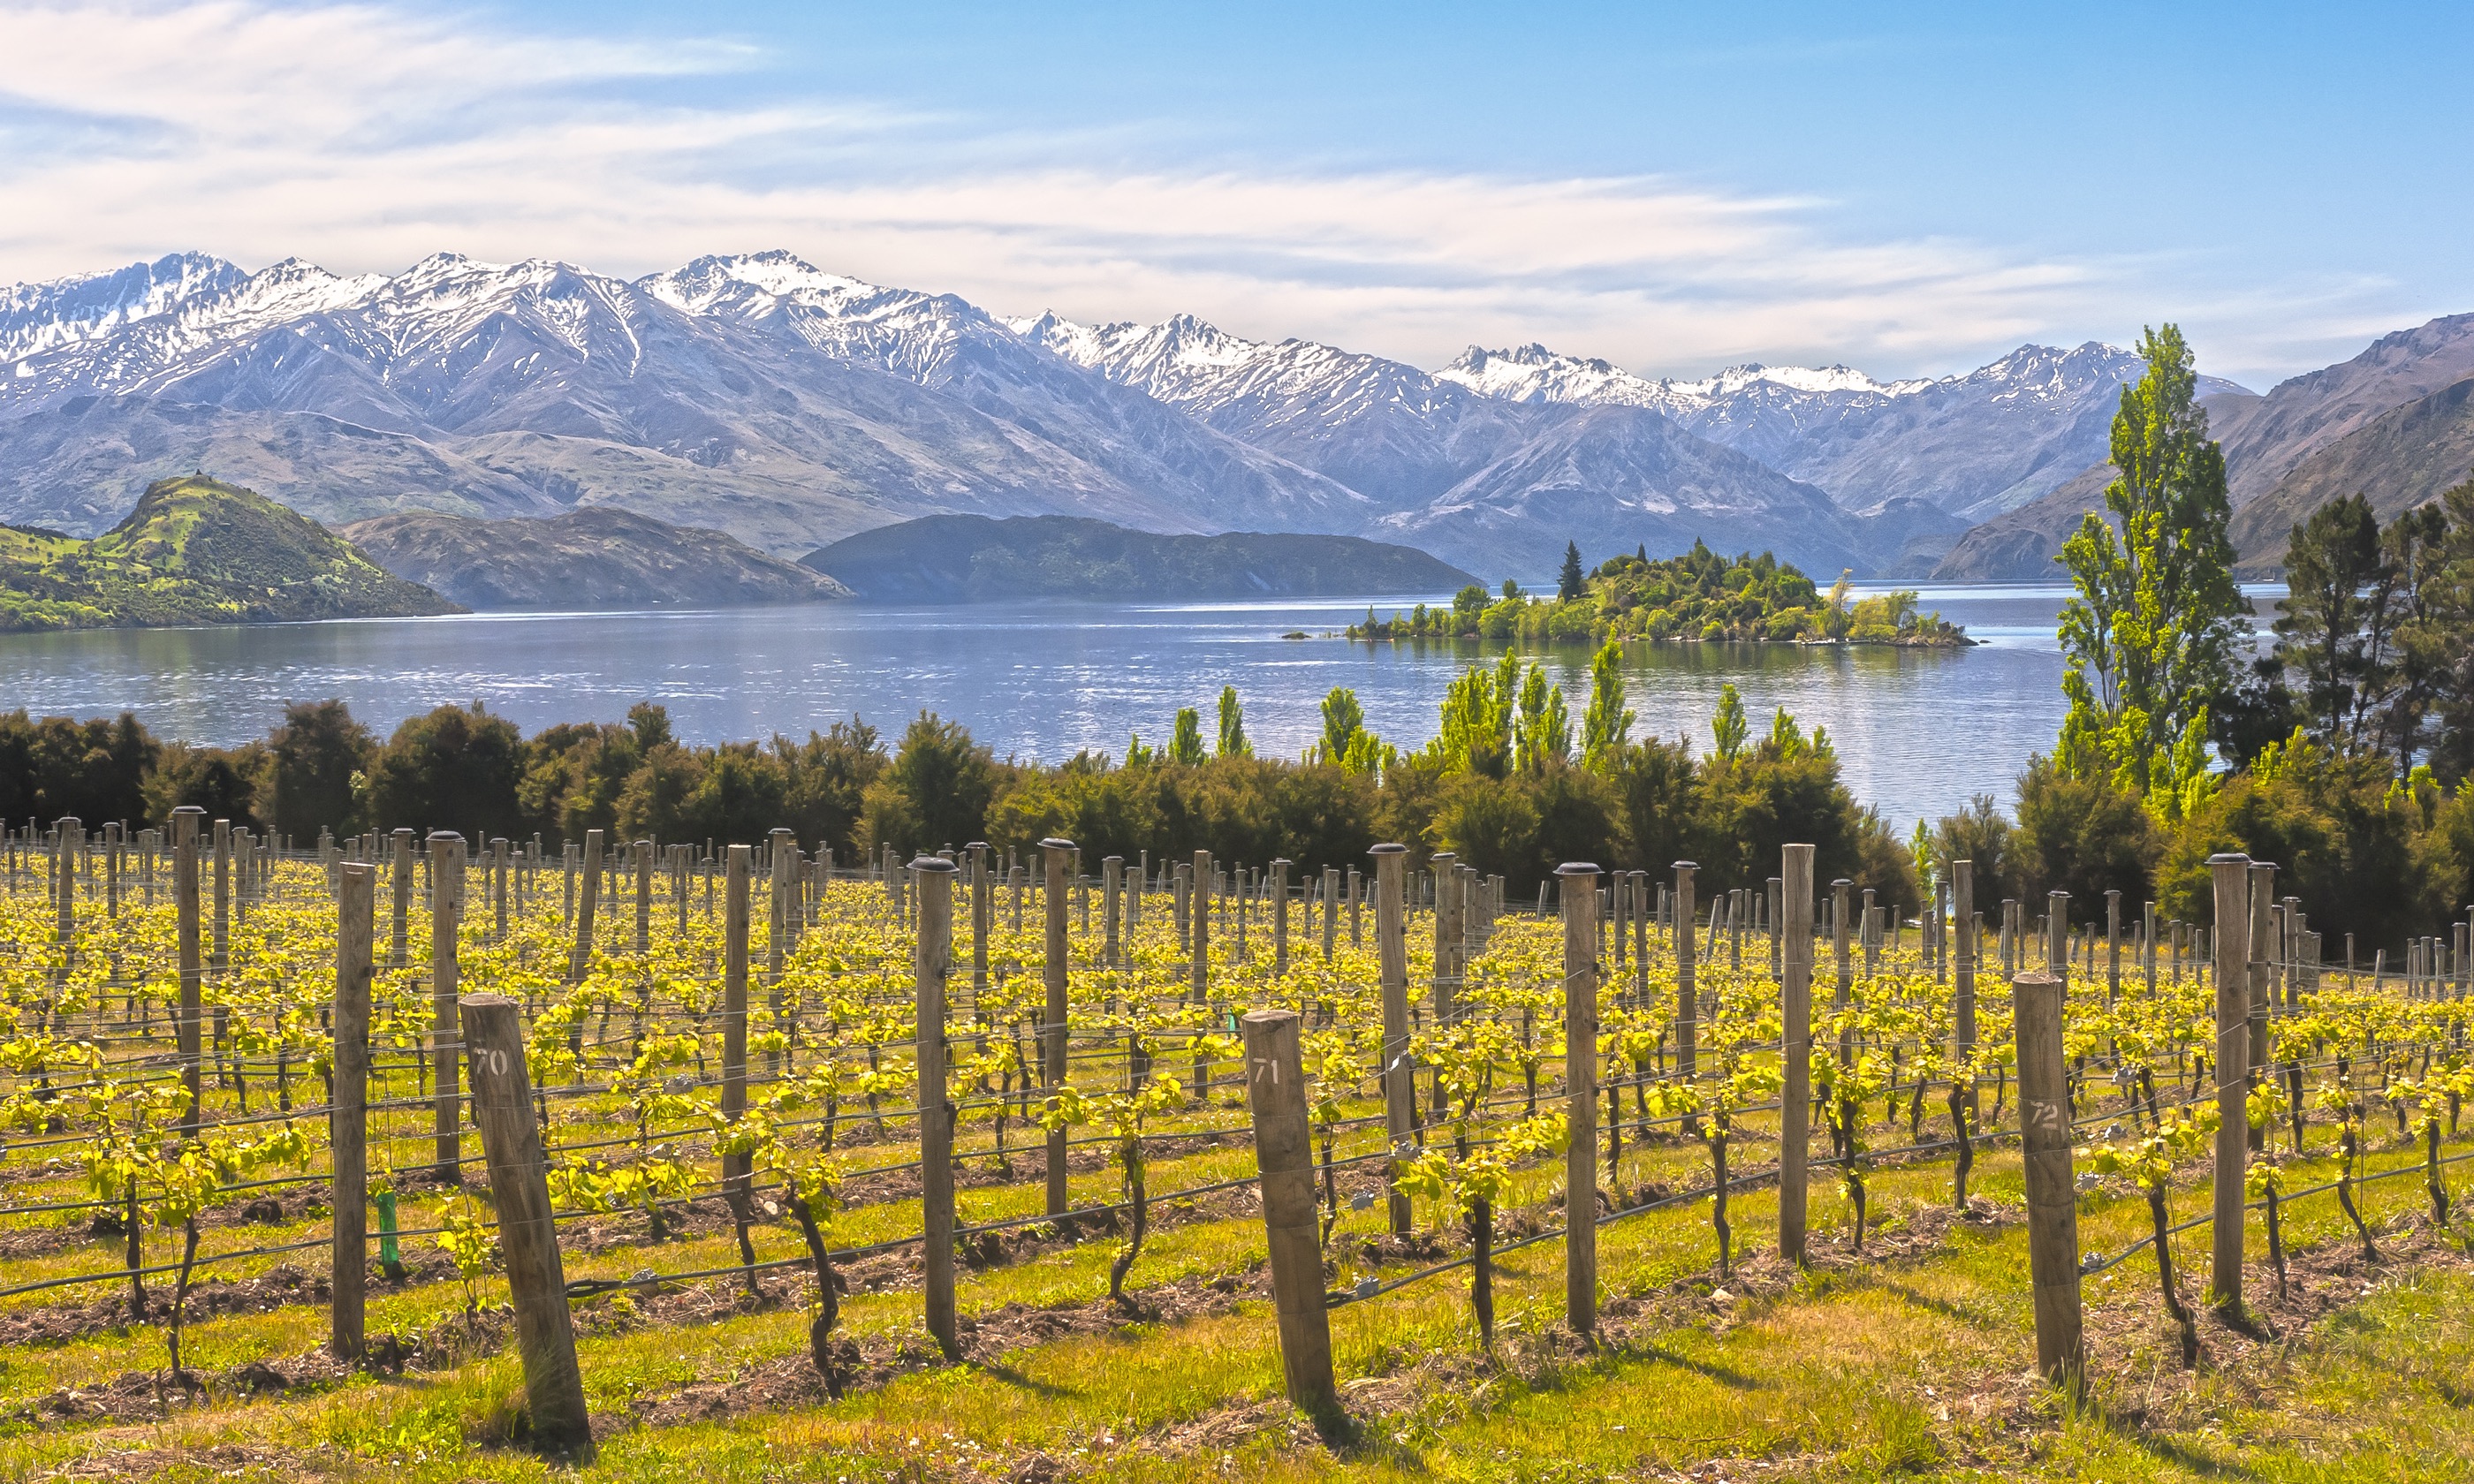 Vineyard by lake in New Zealand (Shutterstock.com)